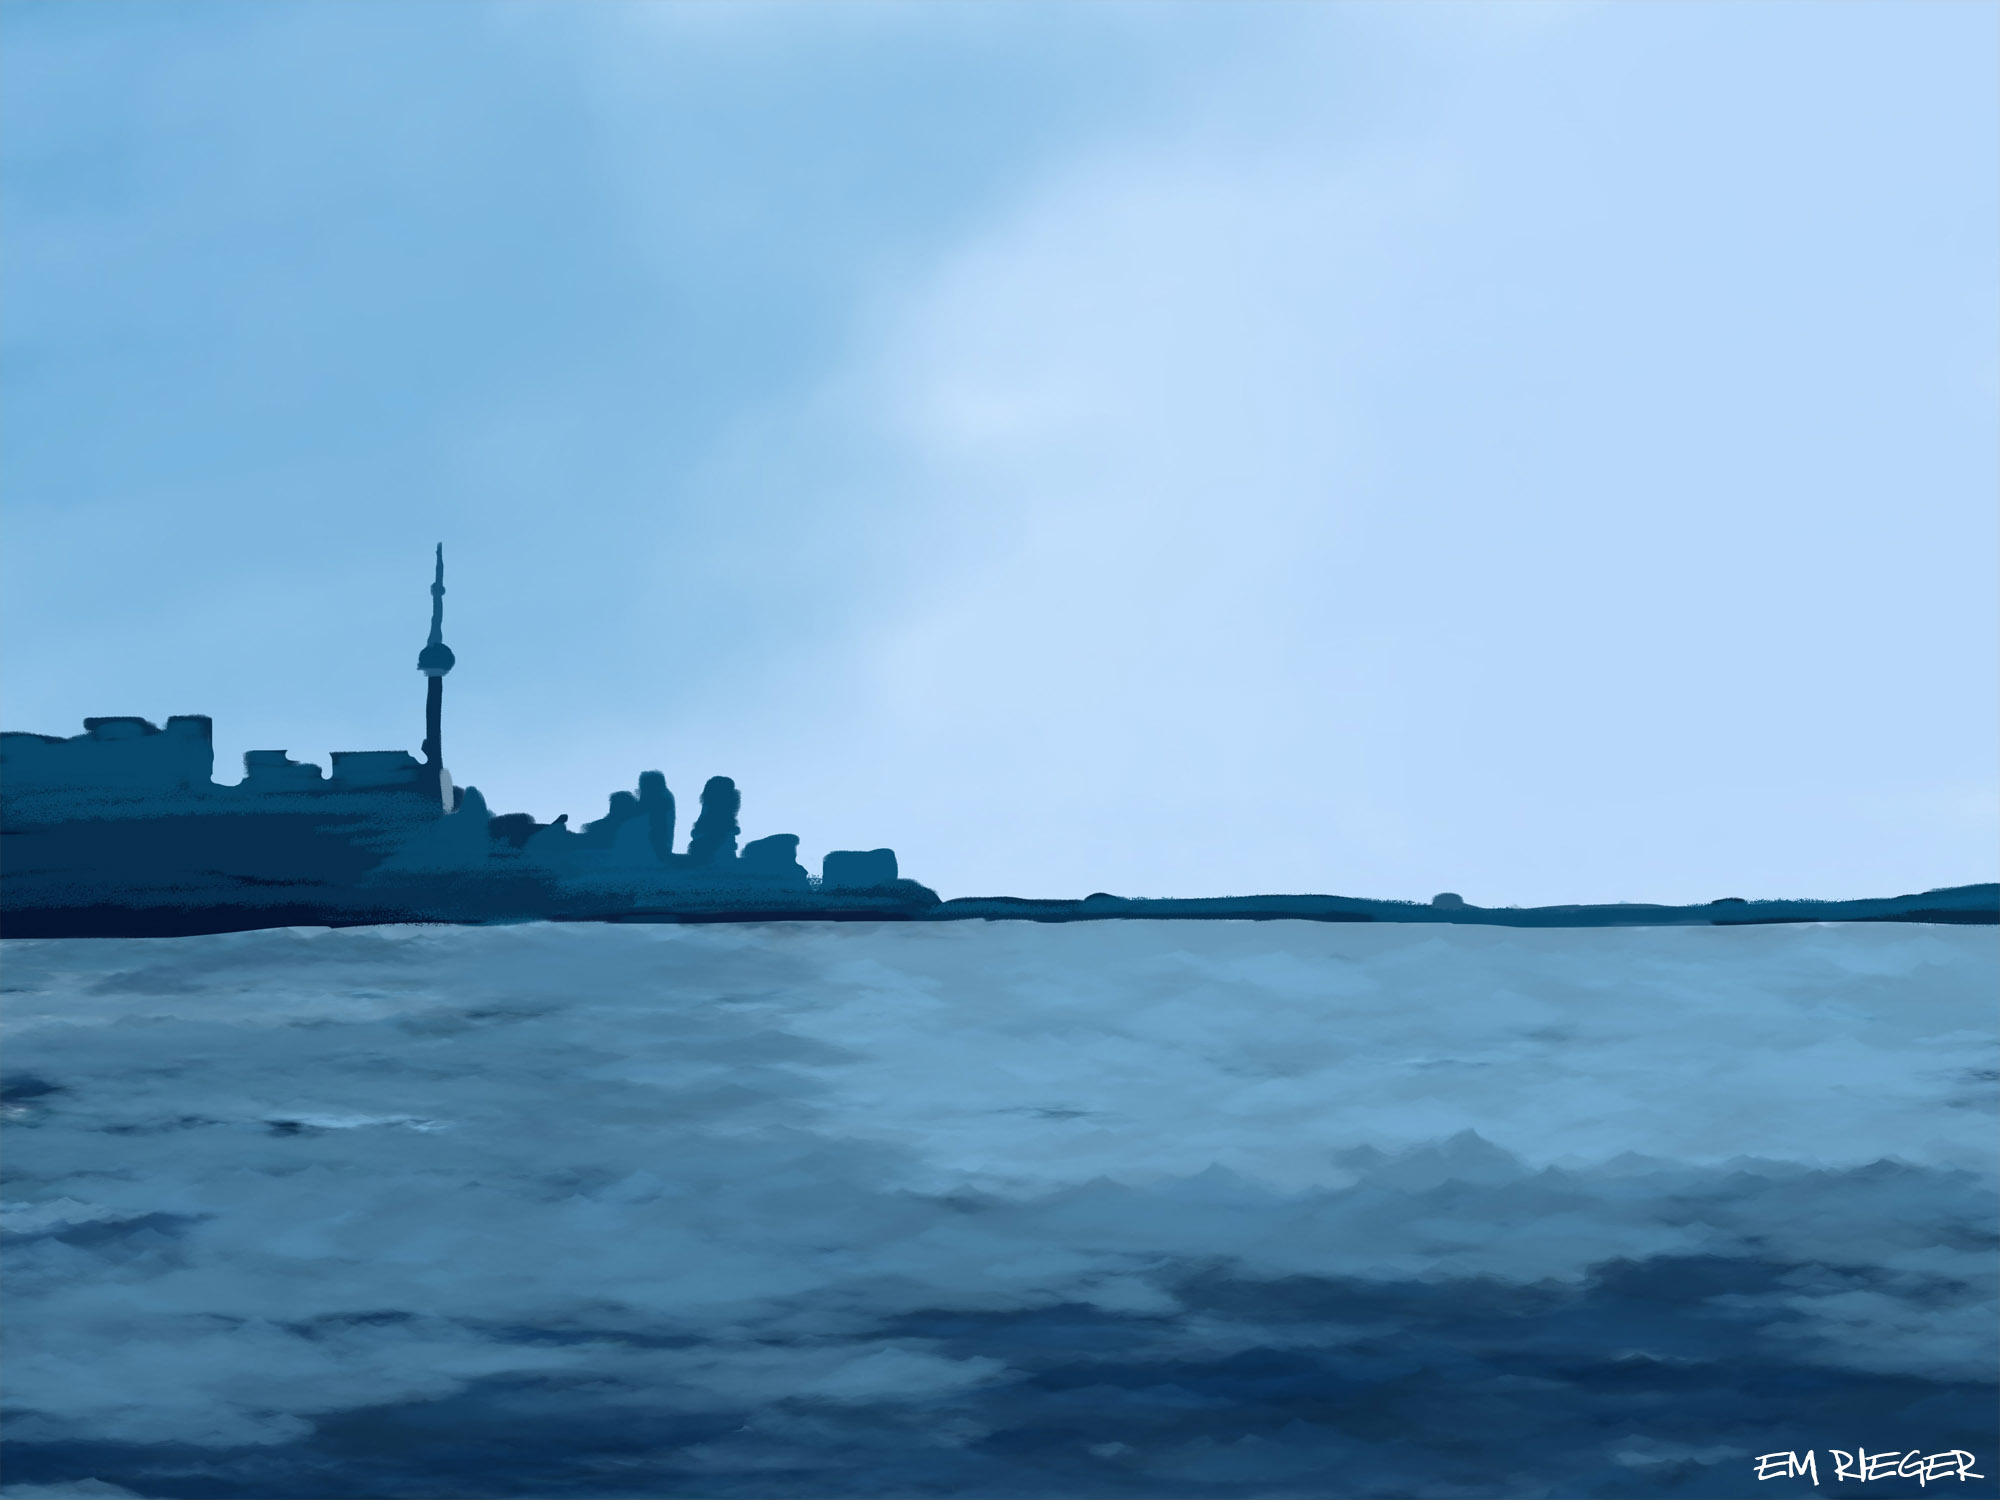 Toronto Love Painting